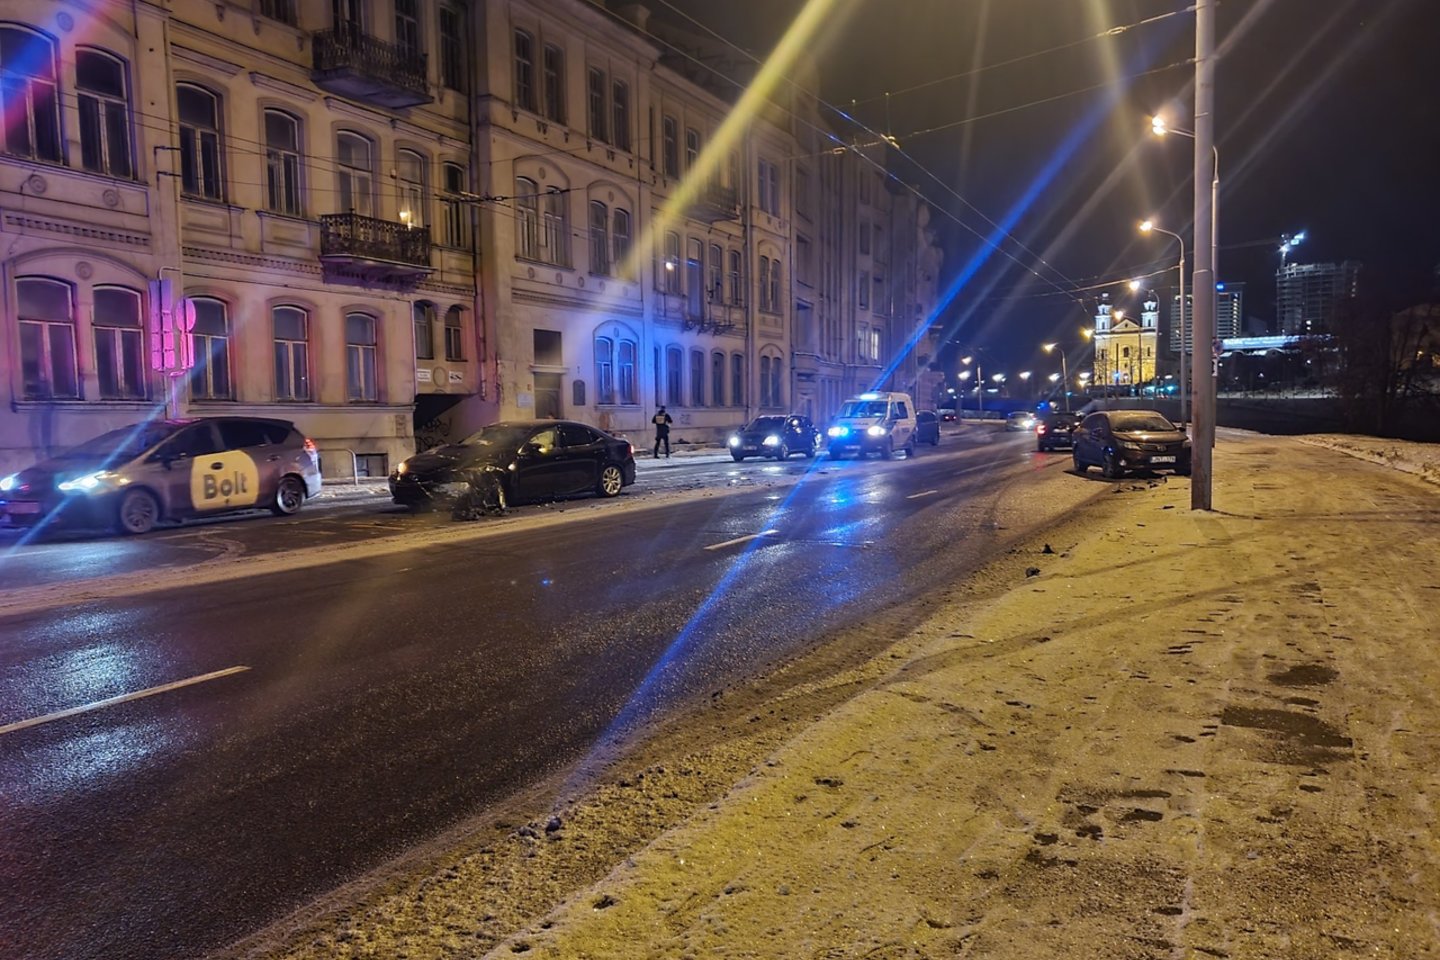  Per girto vairuotojo sukeltą avariją Vilniaus centre sužeisti 3 žmonės.<br> Lrytas.lt nuotr.